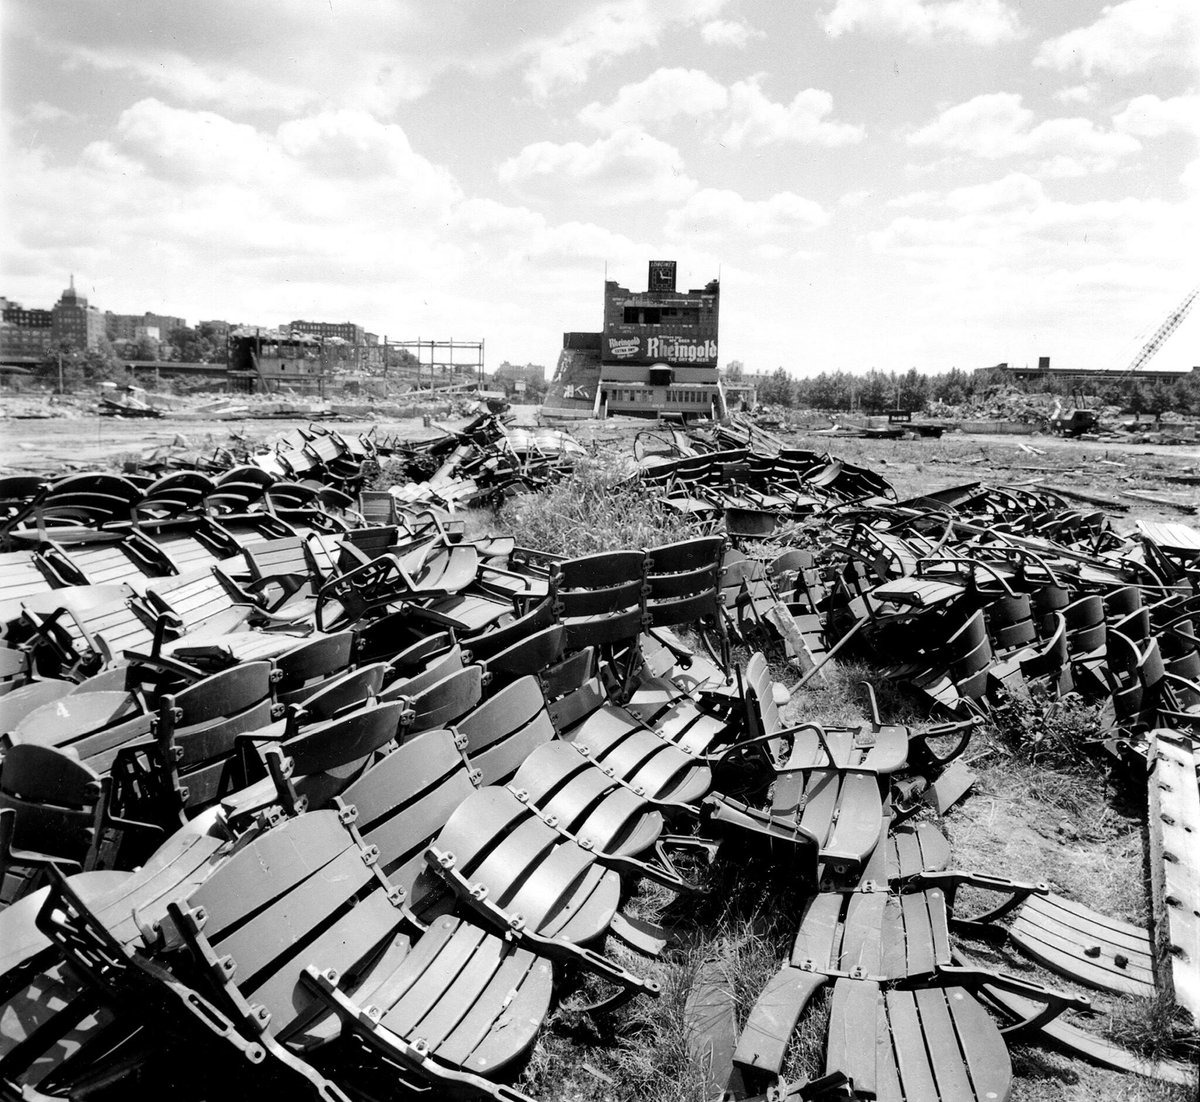 Demolished April 10, 1964: the Polo Grounds. ballparksofbaseball.com/ballparks/polo…